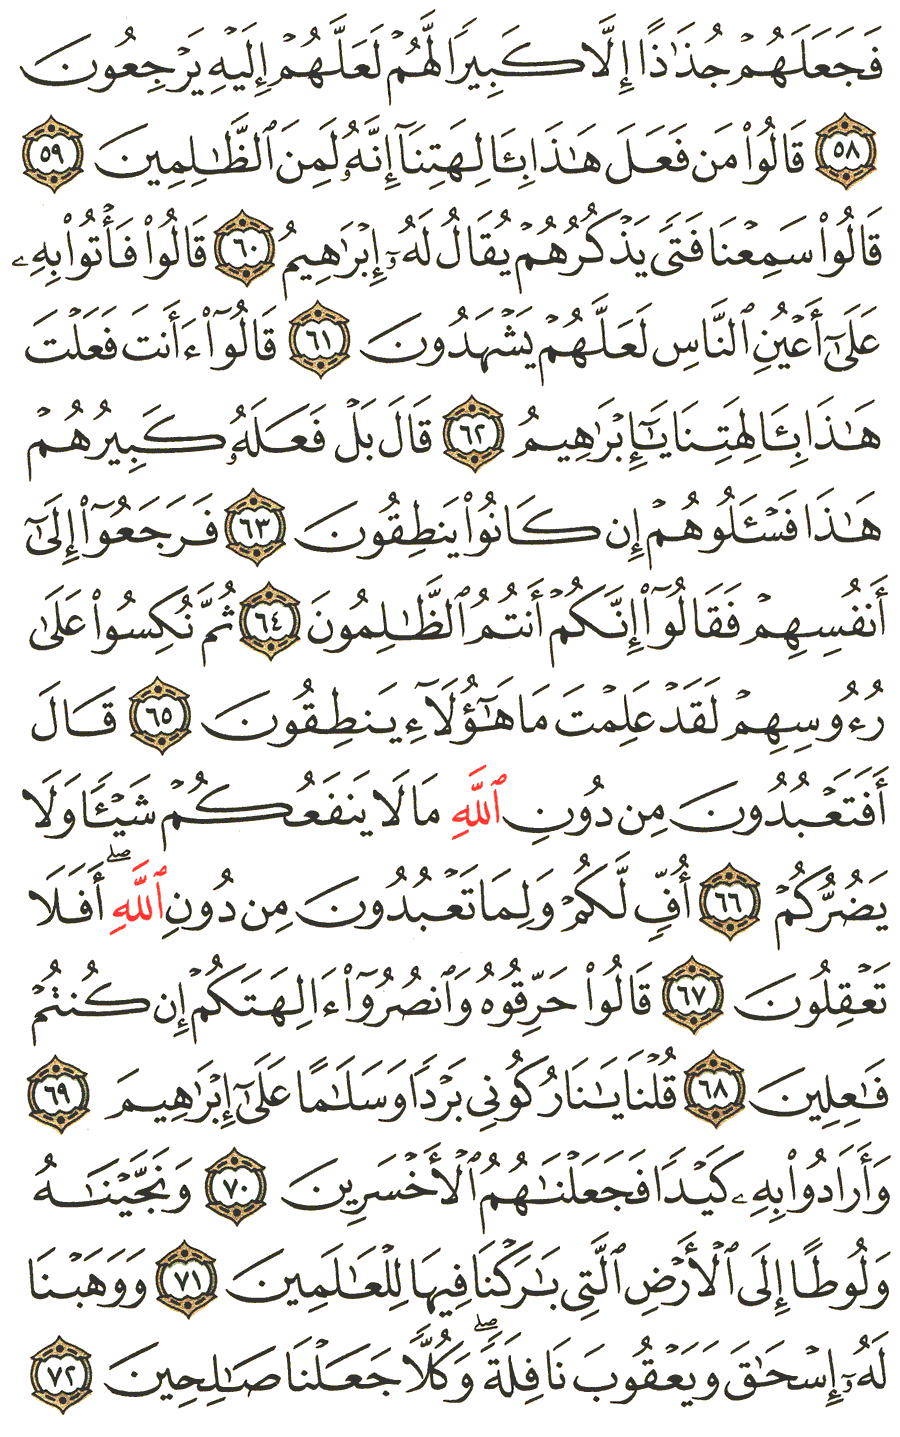 الصفحة 327 من القرآن الكريم